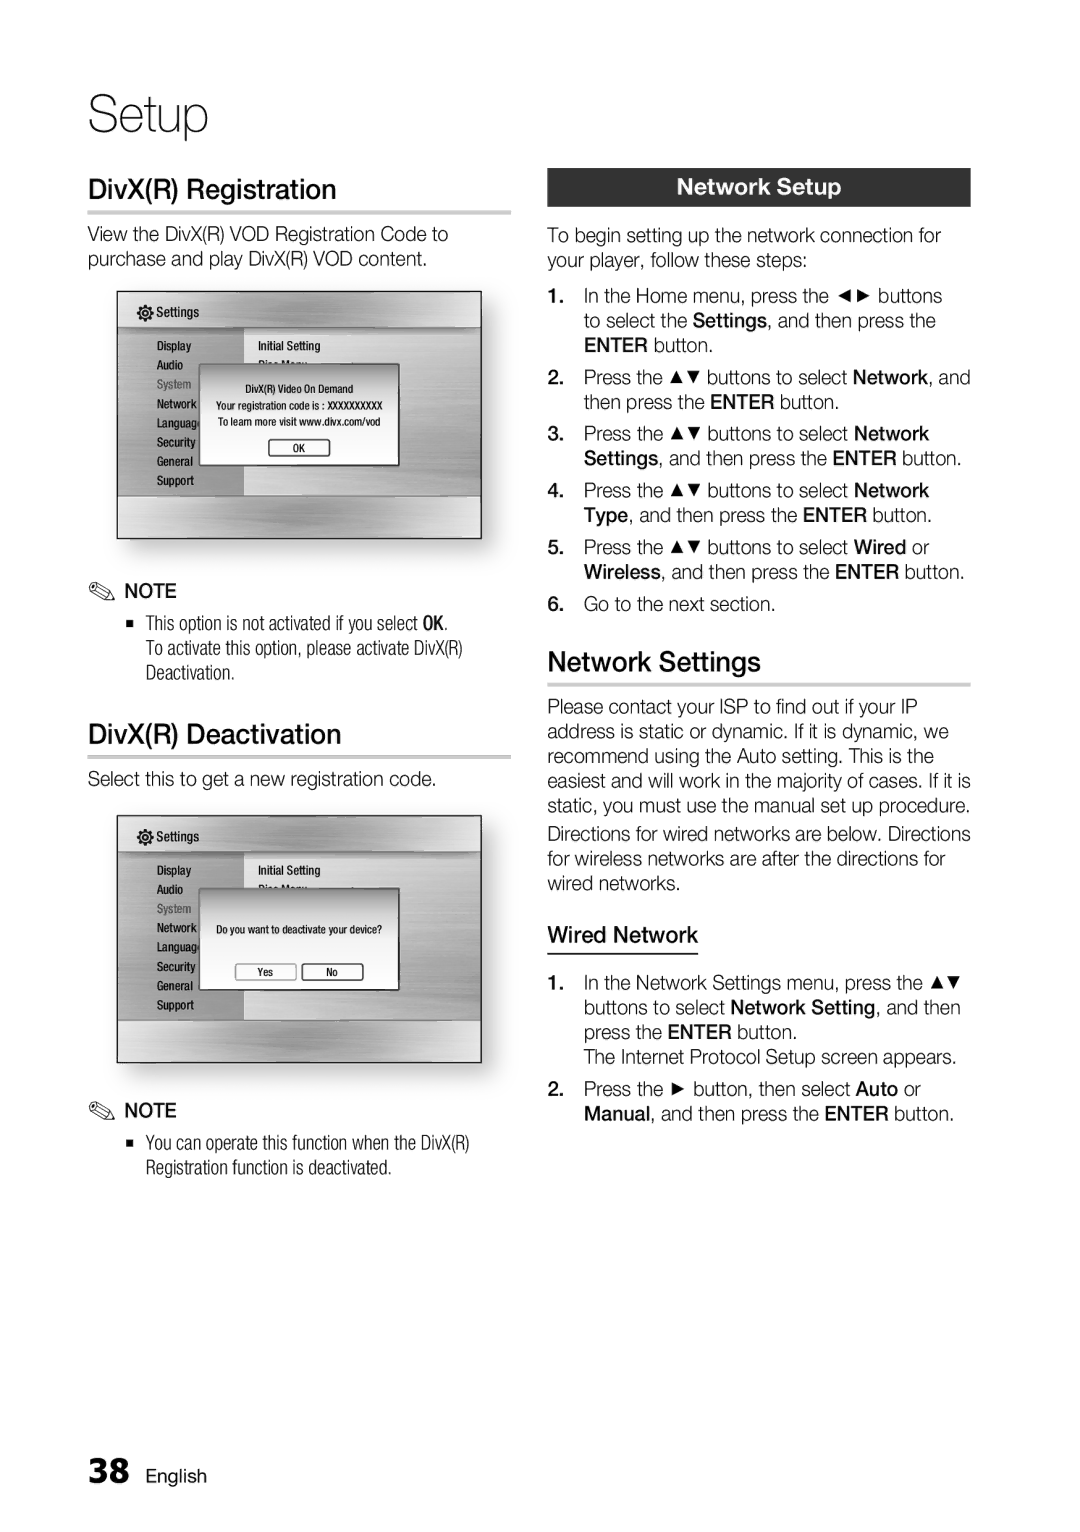 Samsung BD-C7500 user manual DivXR Registration, DivXR Deactivation, Network Settings, Network Setup, Wired Network 